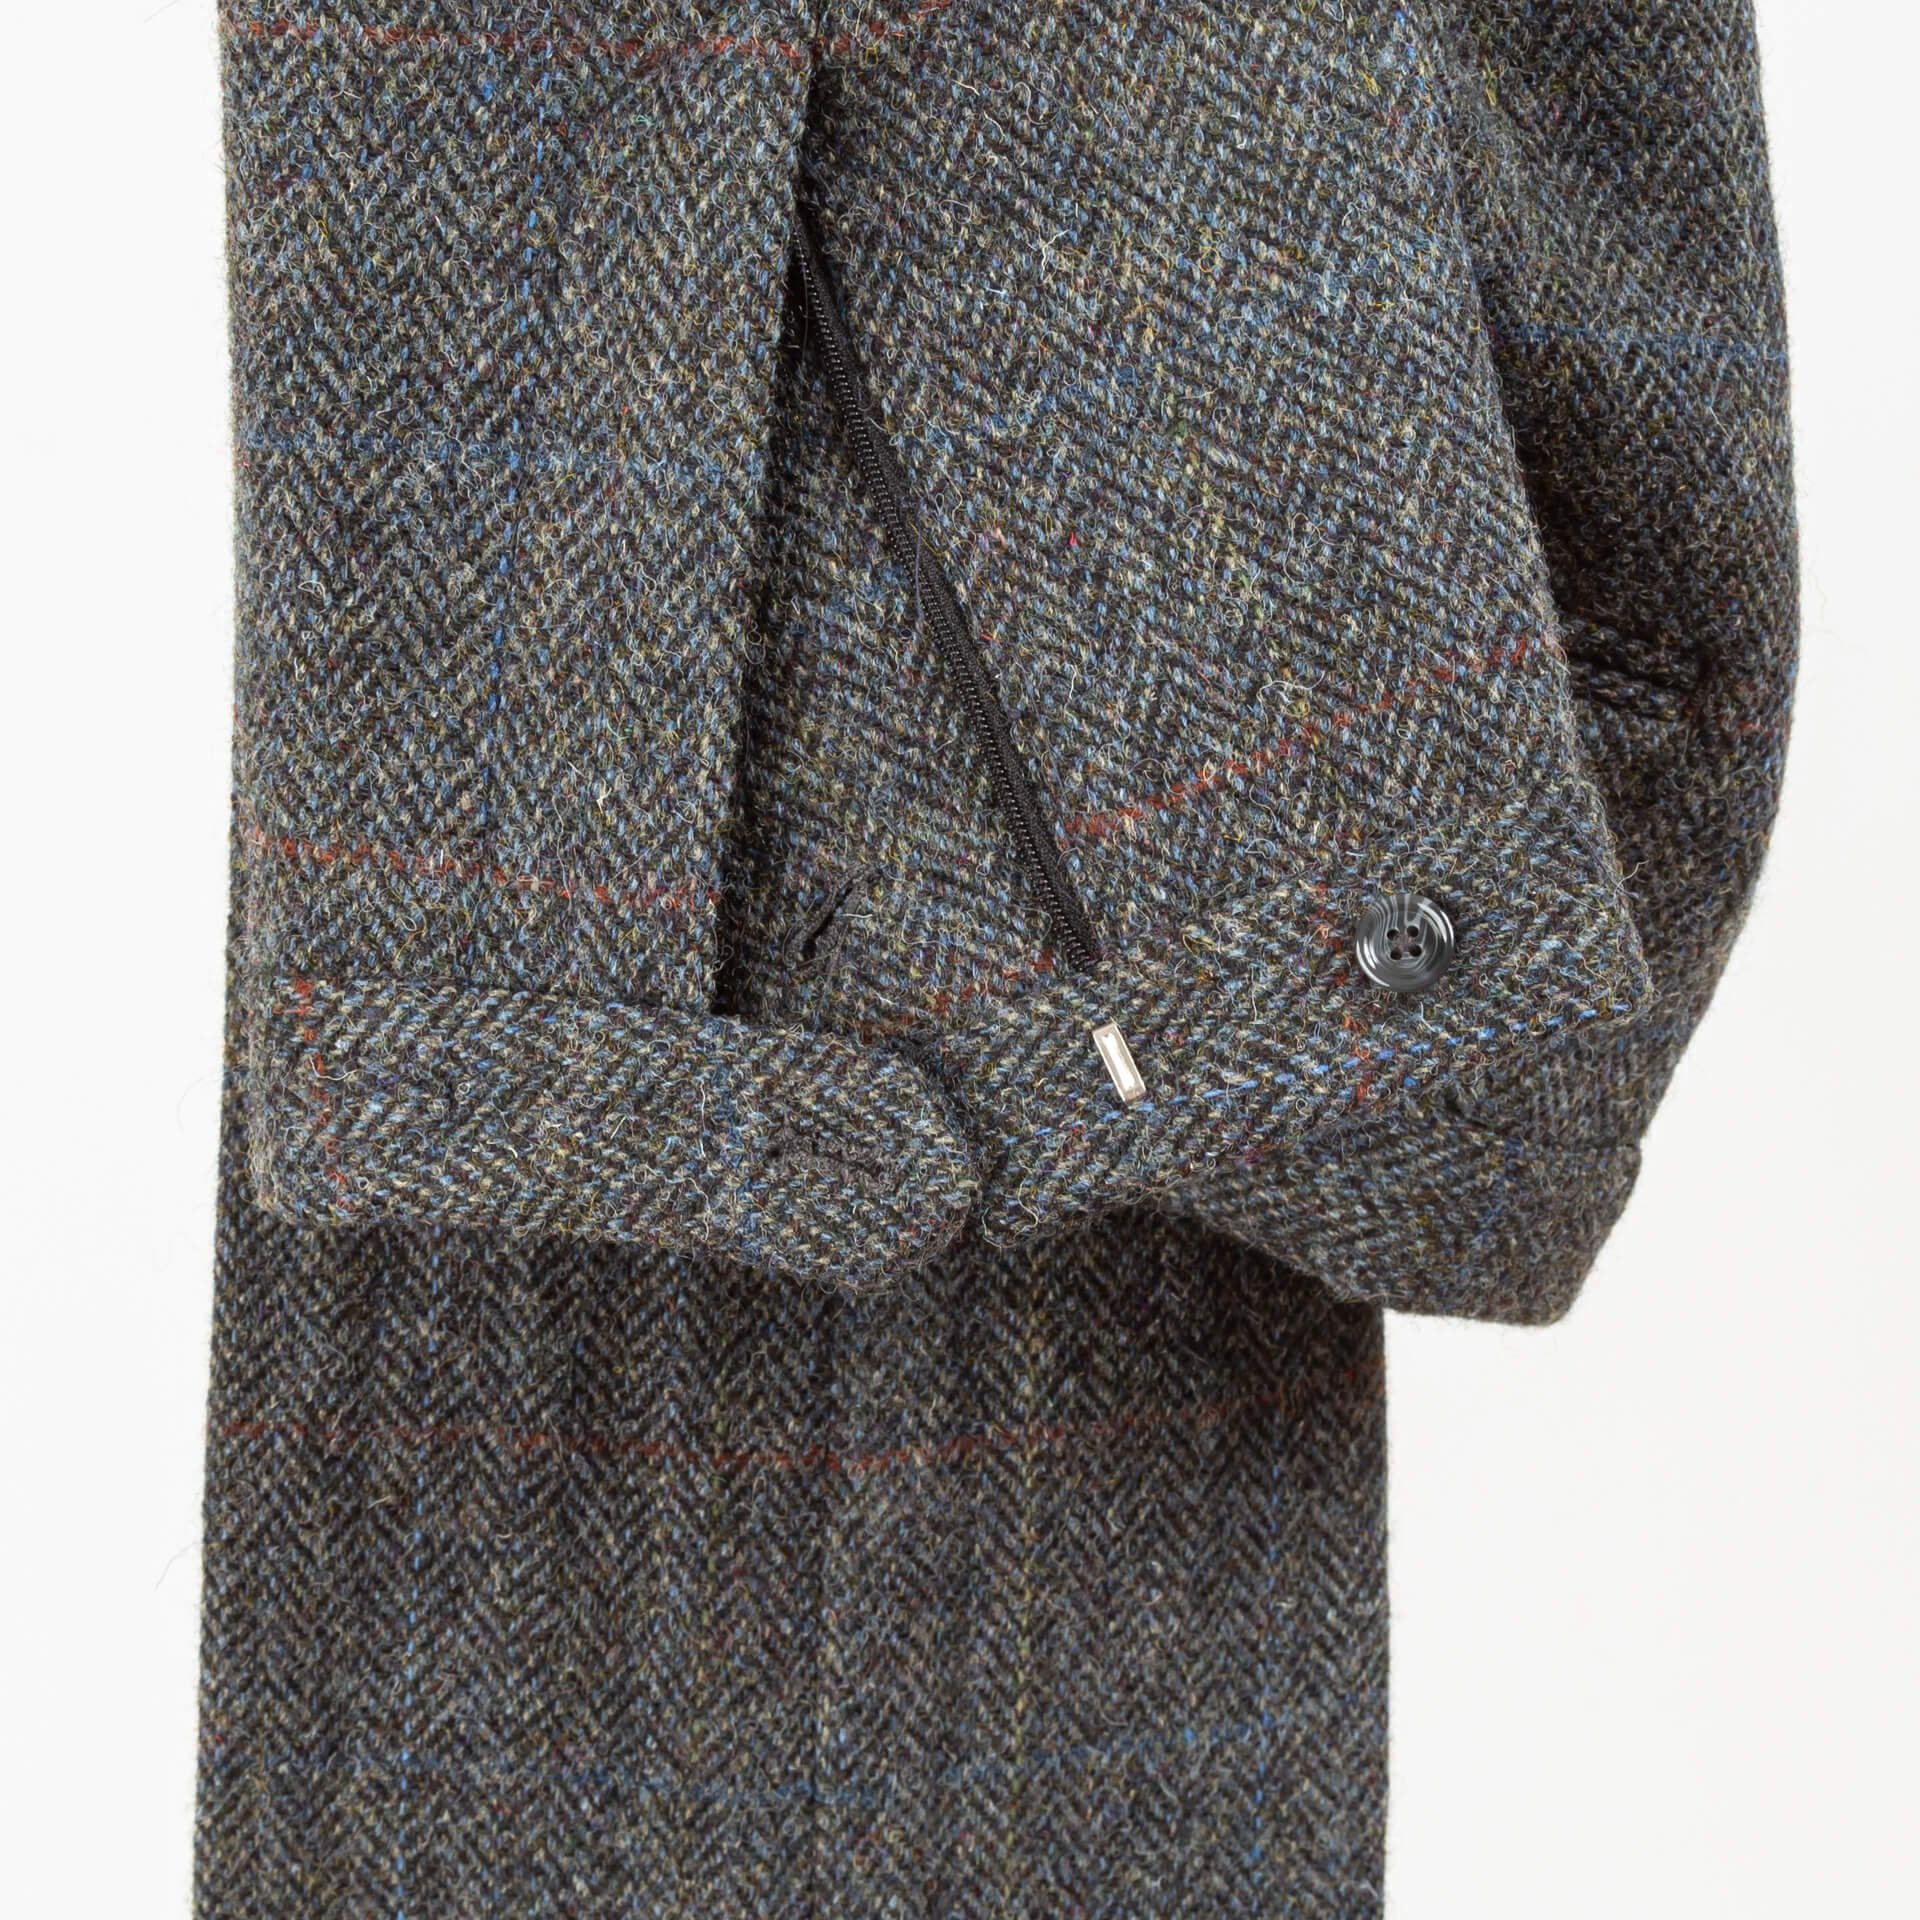 Omdat Voorwaarden Achtervolging Een Harris Tweed broek op maat — De Oost Bespoke Tailoring : Bewust Gekleed